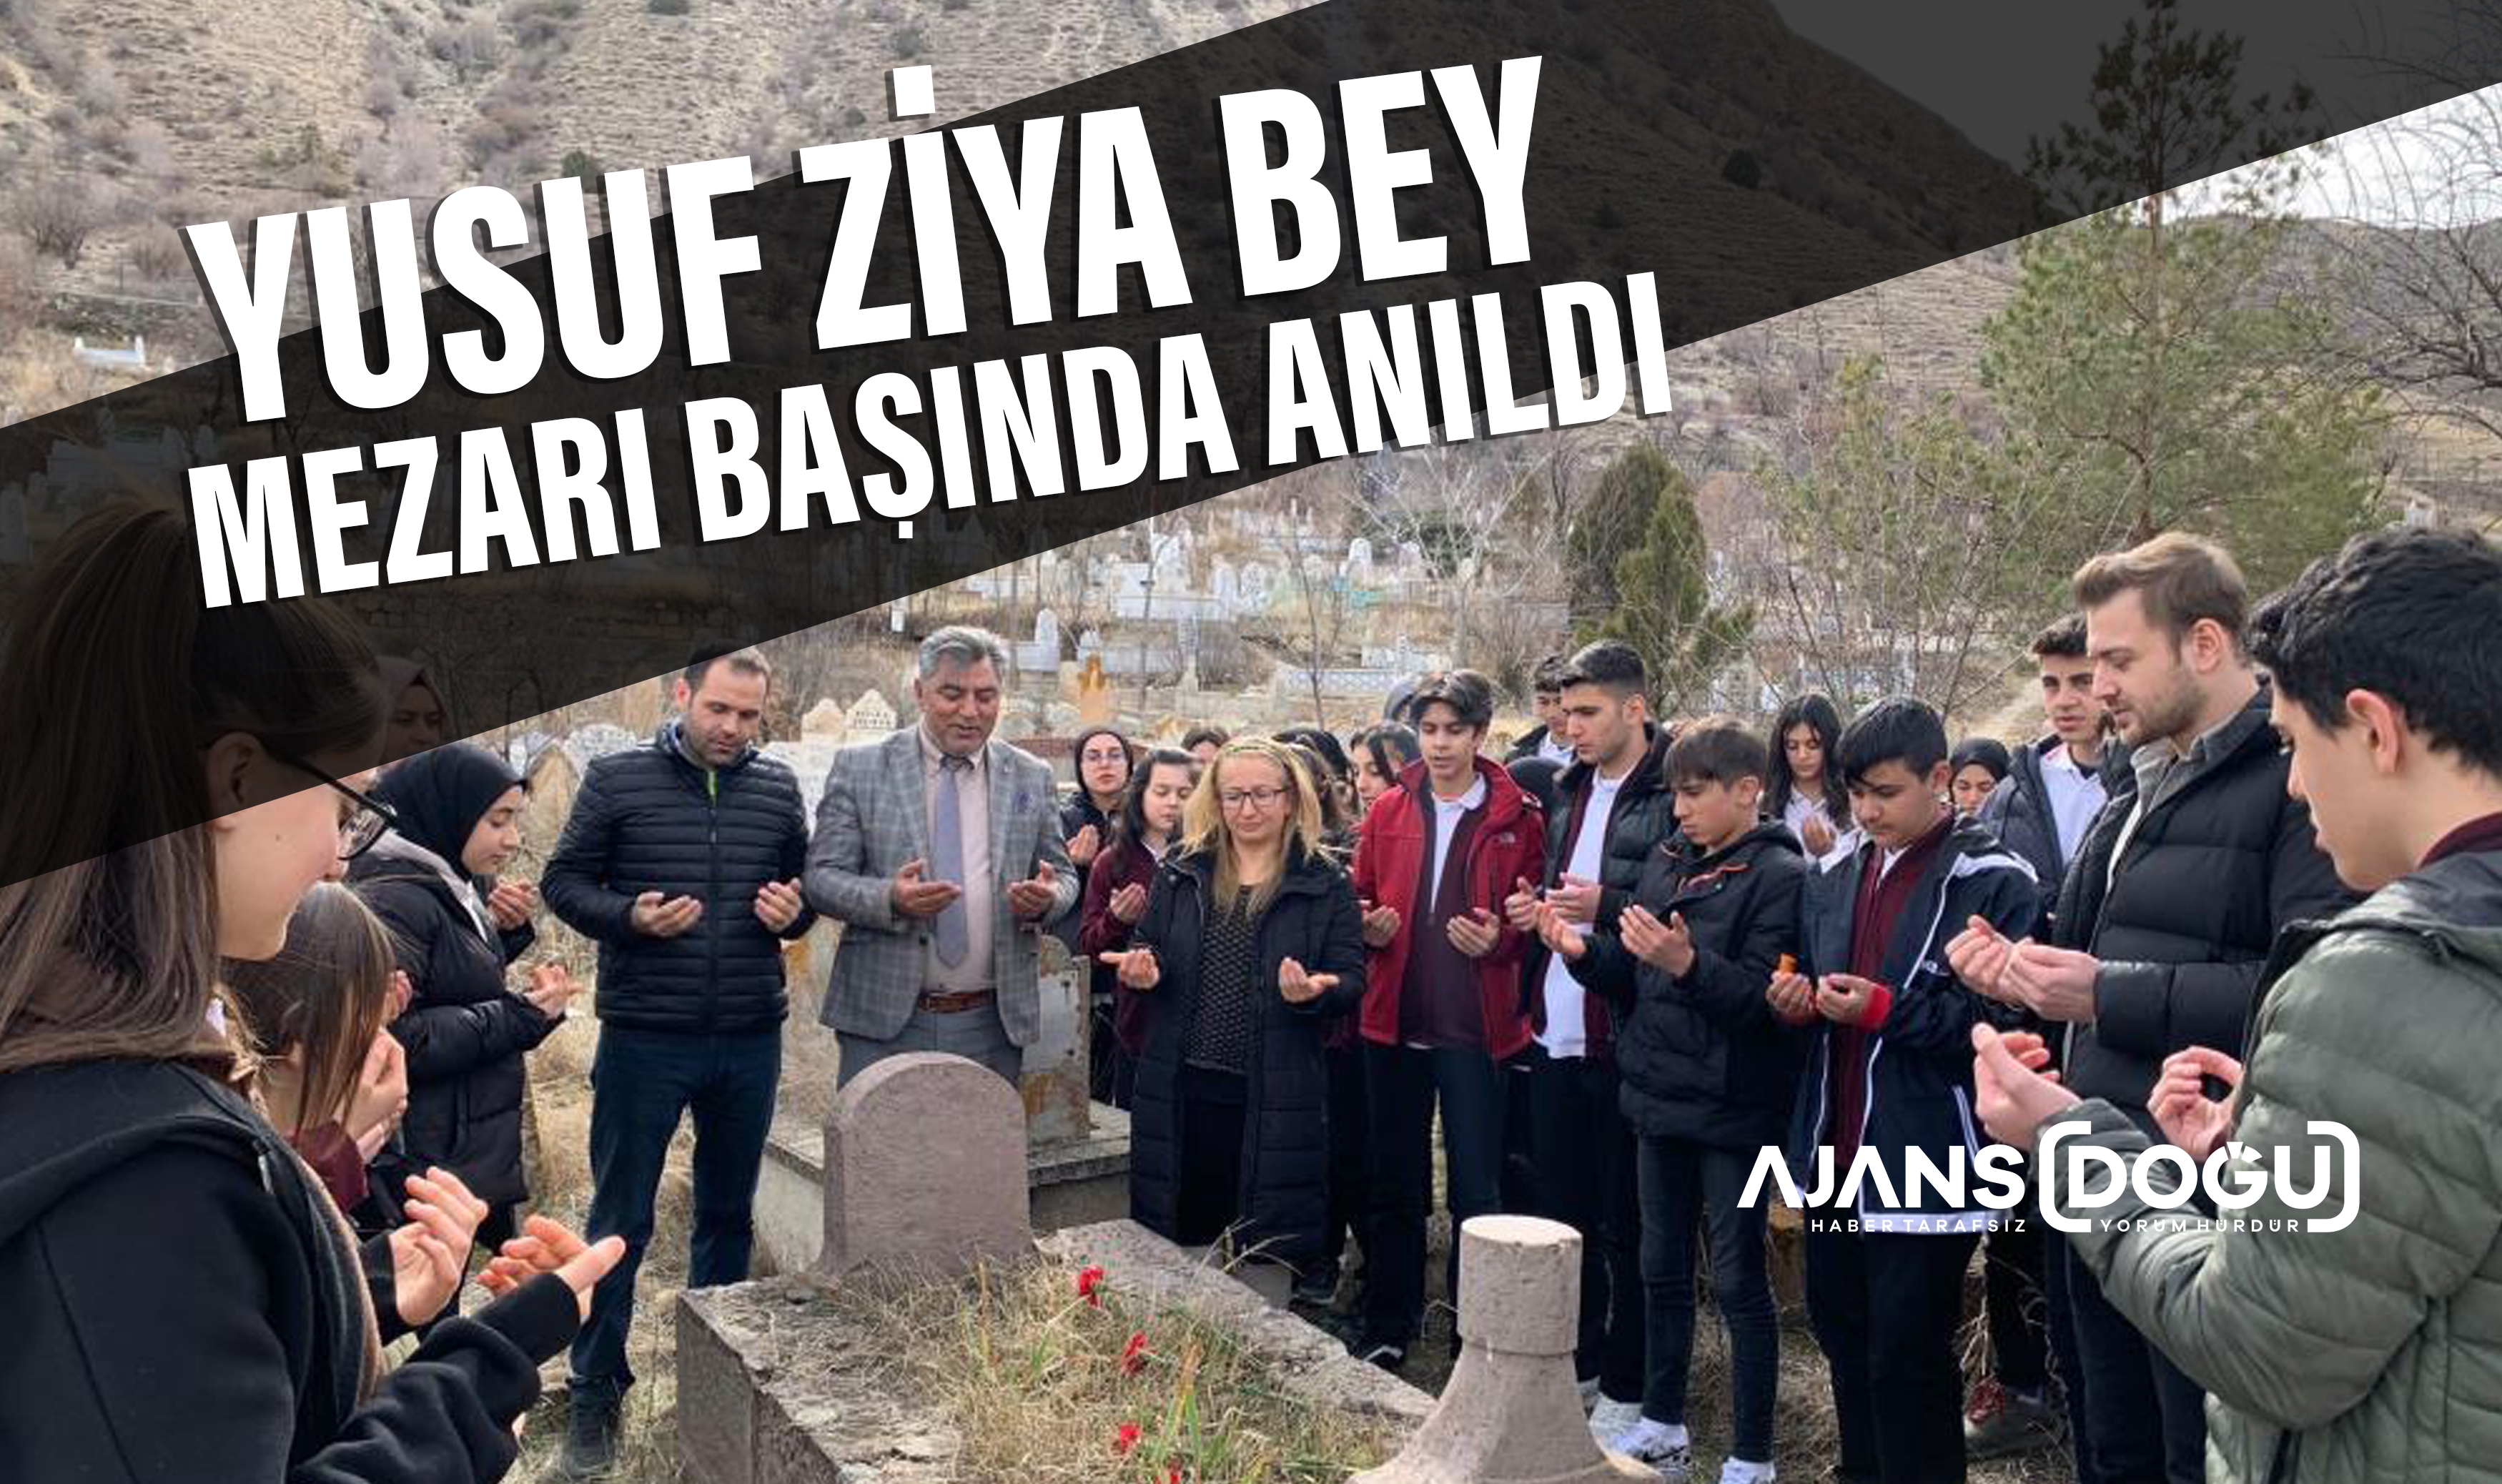 Yusuf Ziyabey mezarı başında anıldı